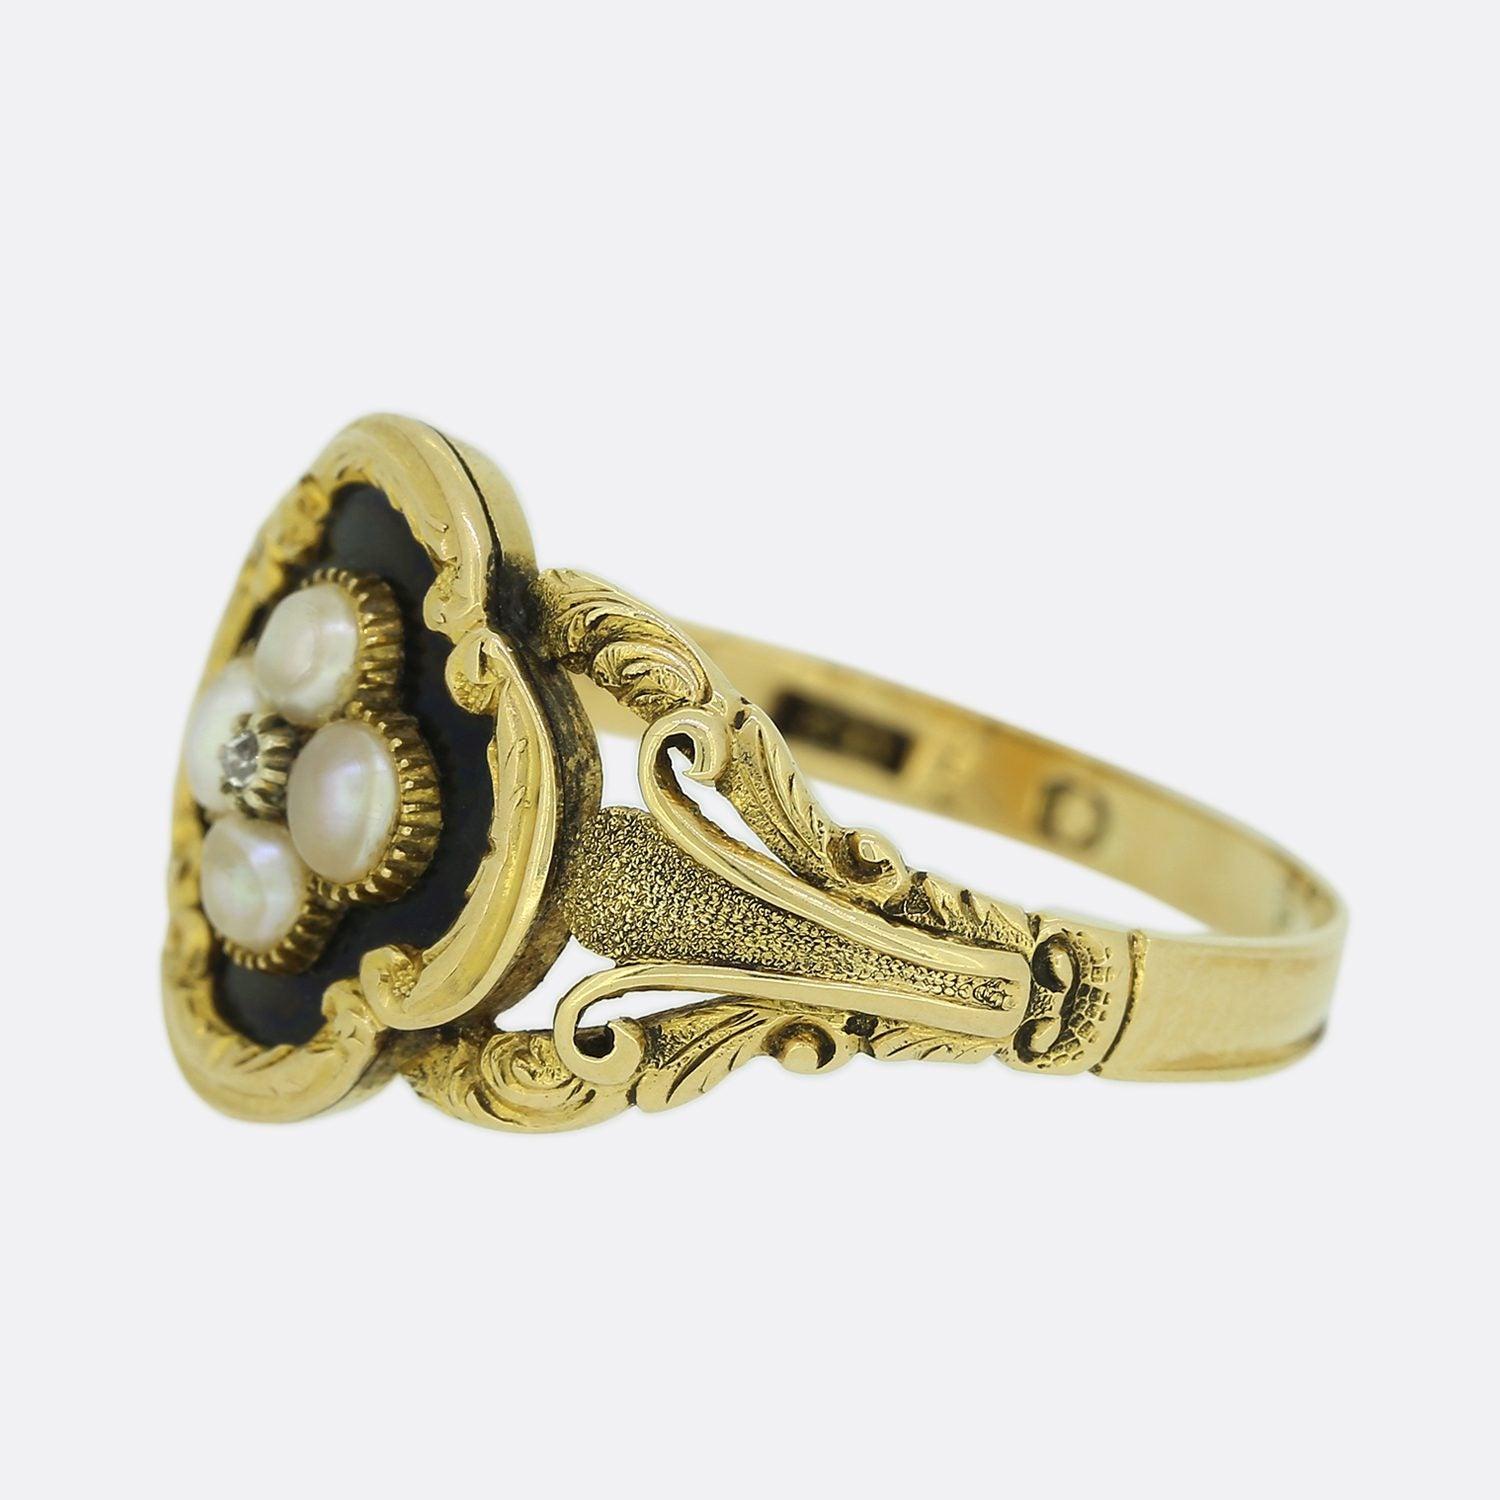 Dies ist ein wunderschön handgefertigter viktorianischer Trauerring aus Gelbgold. Der Ring ist mit einem zentralen Diamanten im Rosenschliff in einer geschliffenen Fassung besetzt und von vier Original-Naturperlen in einer vierblättrigen Fläche